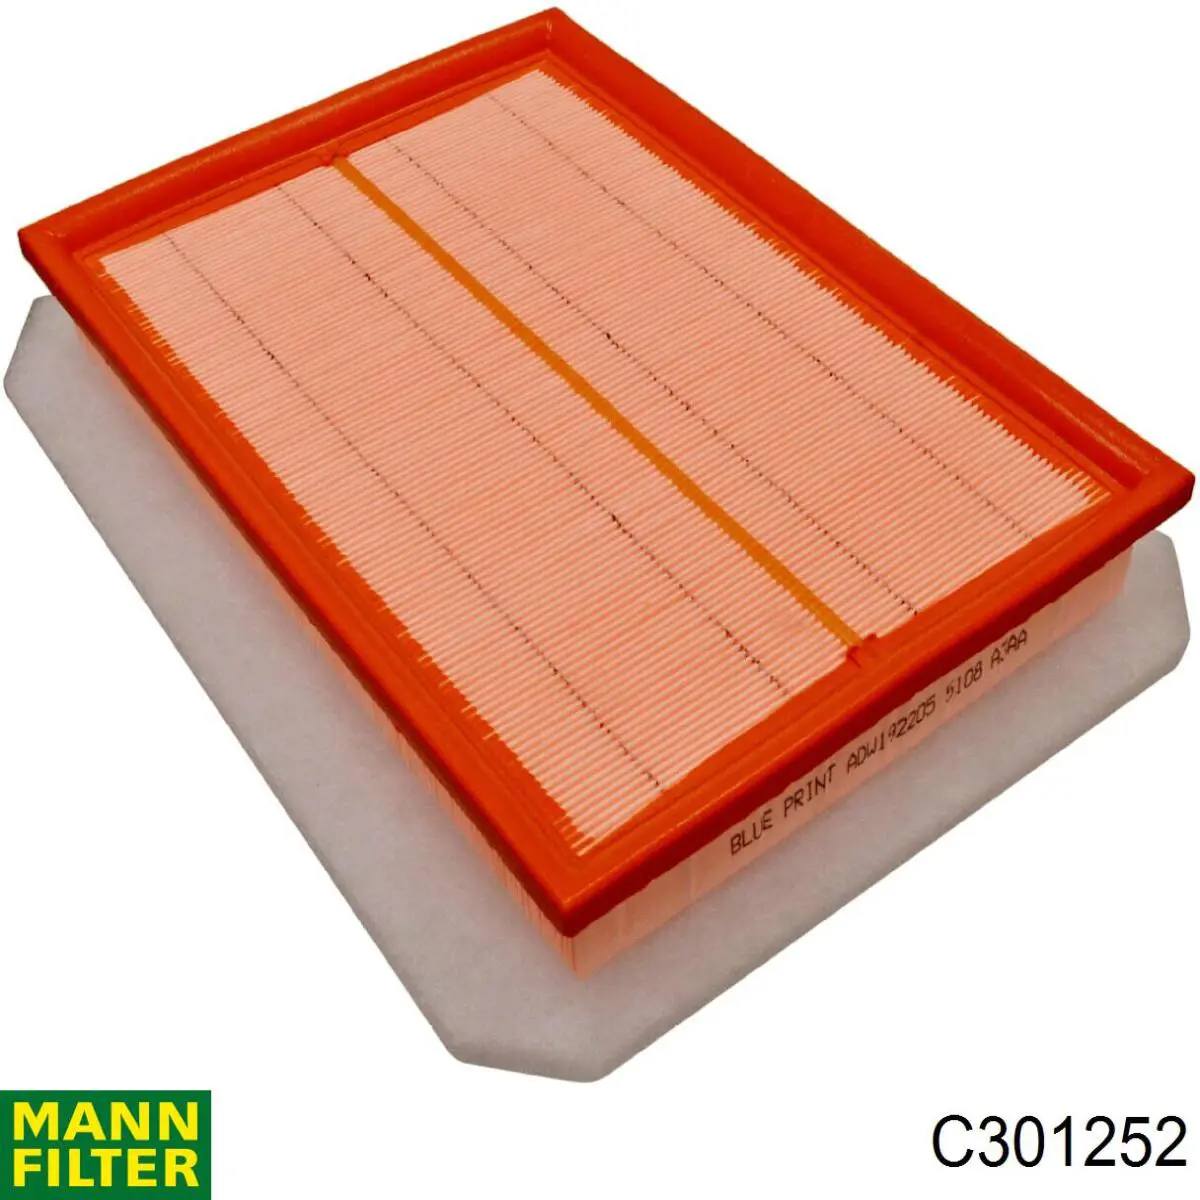 Filtro de aire C301252 Mann-Filter